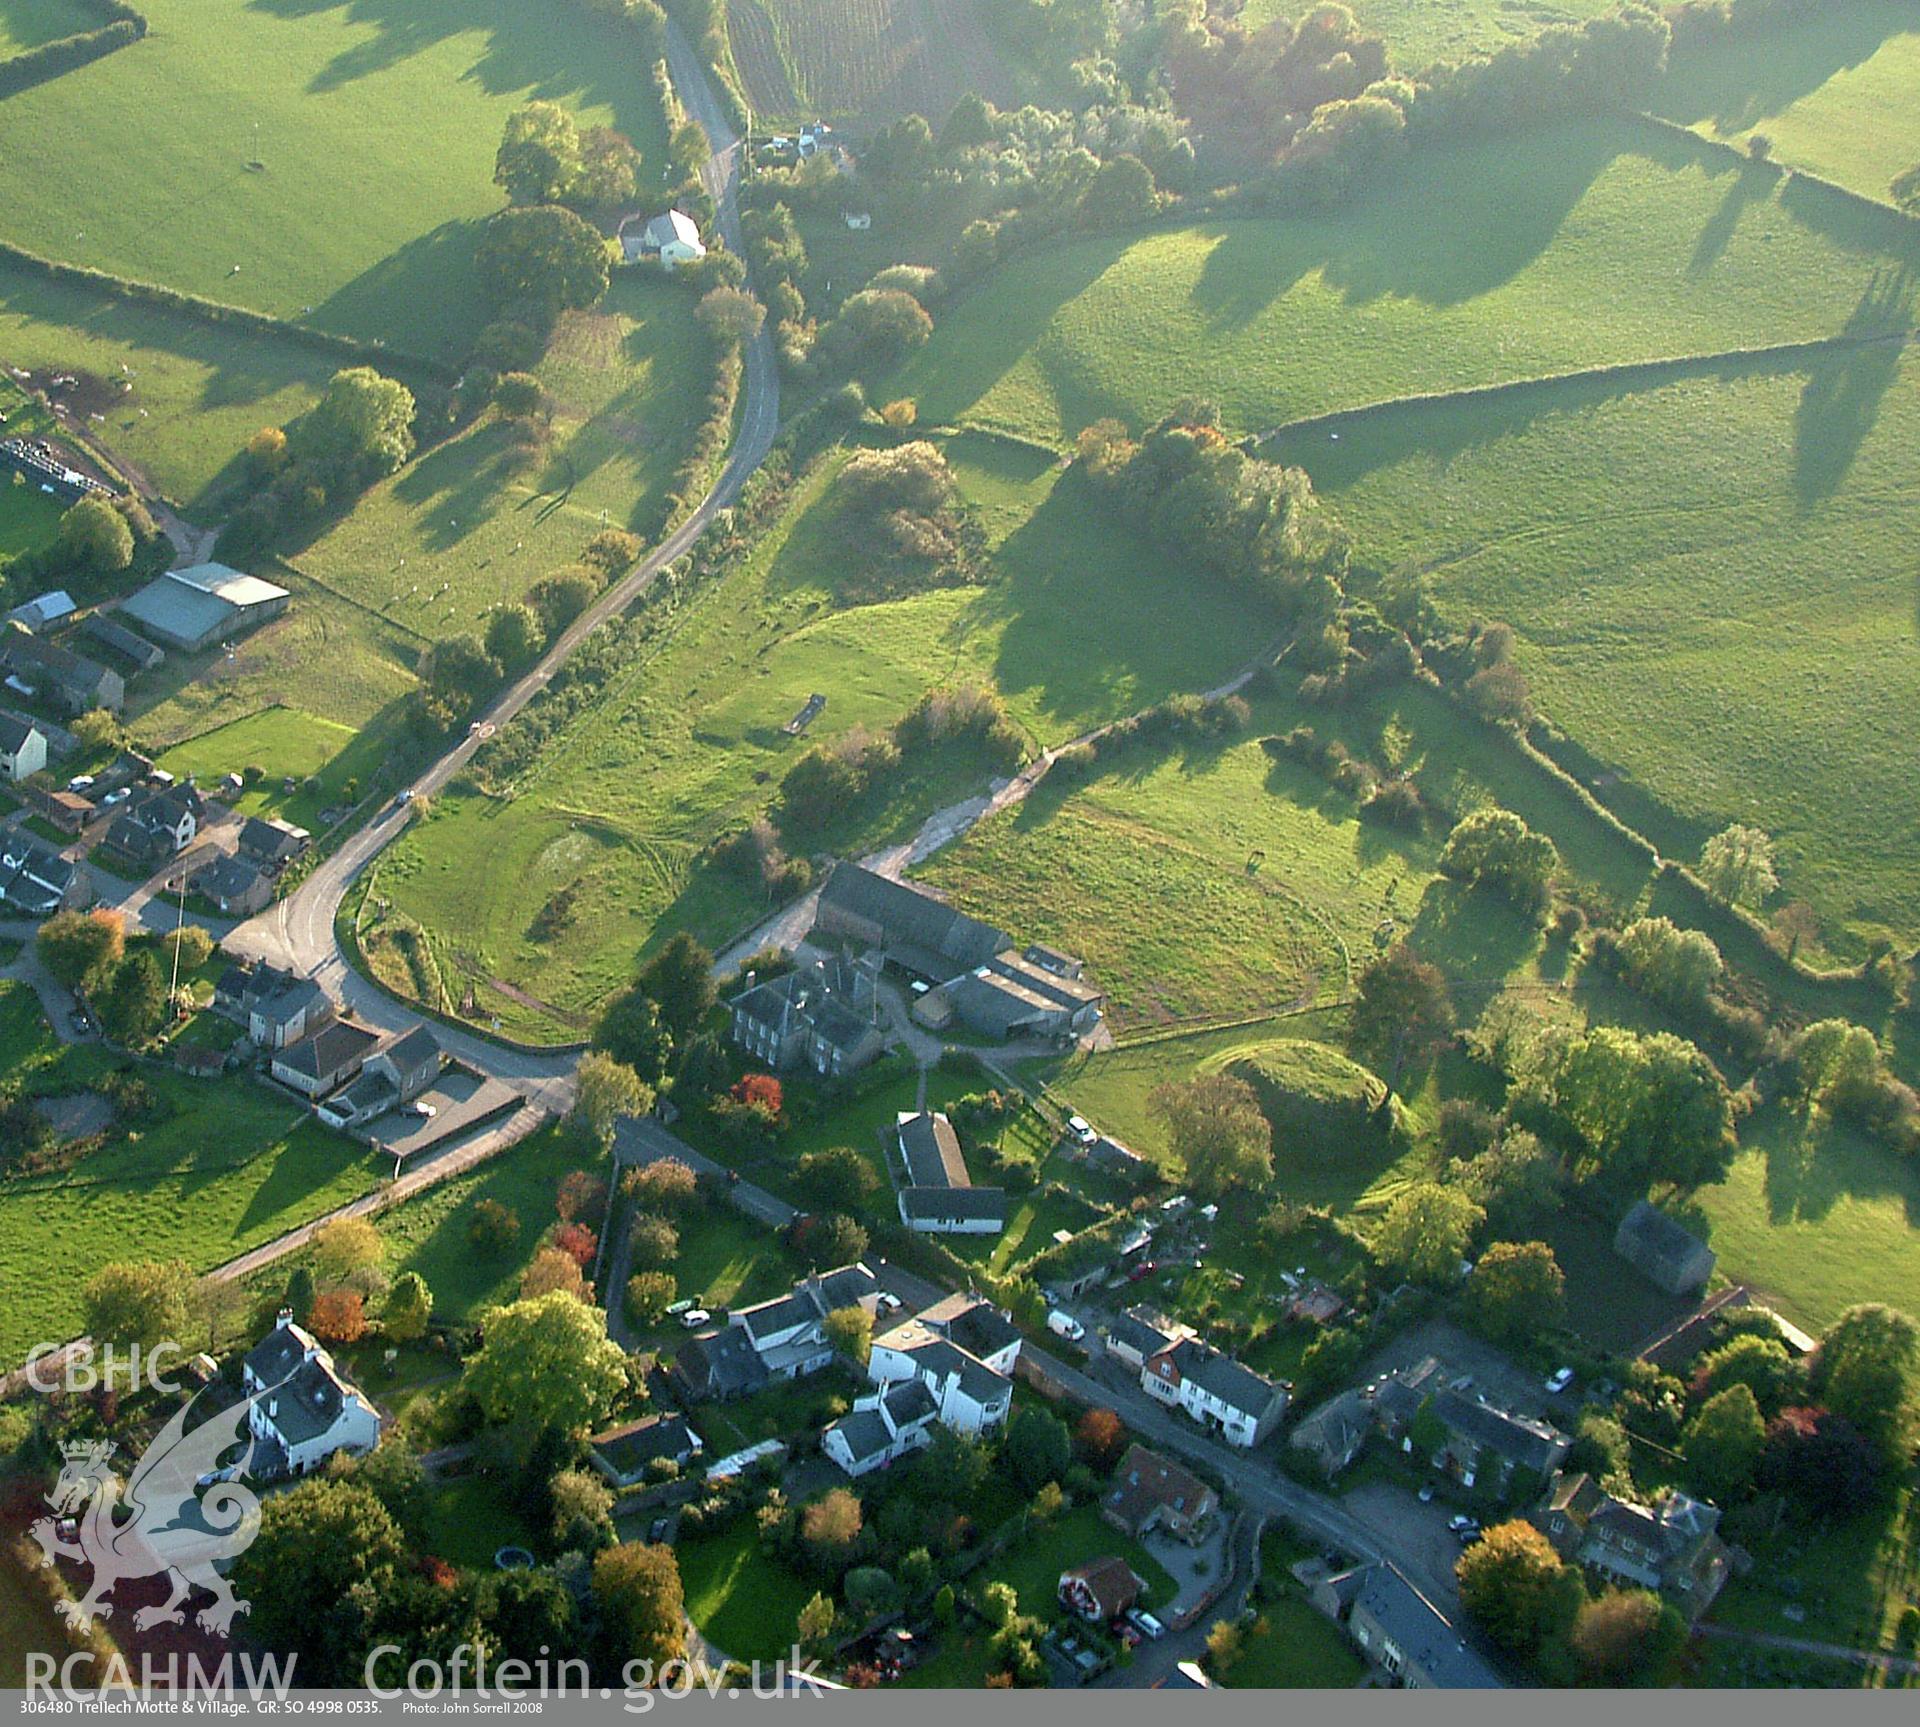 View of Trellech Motte, taken by John Sorrell, 2008.